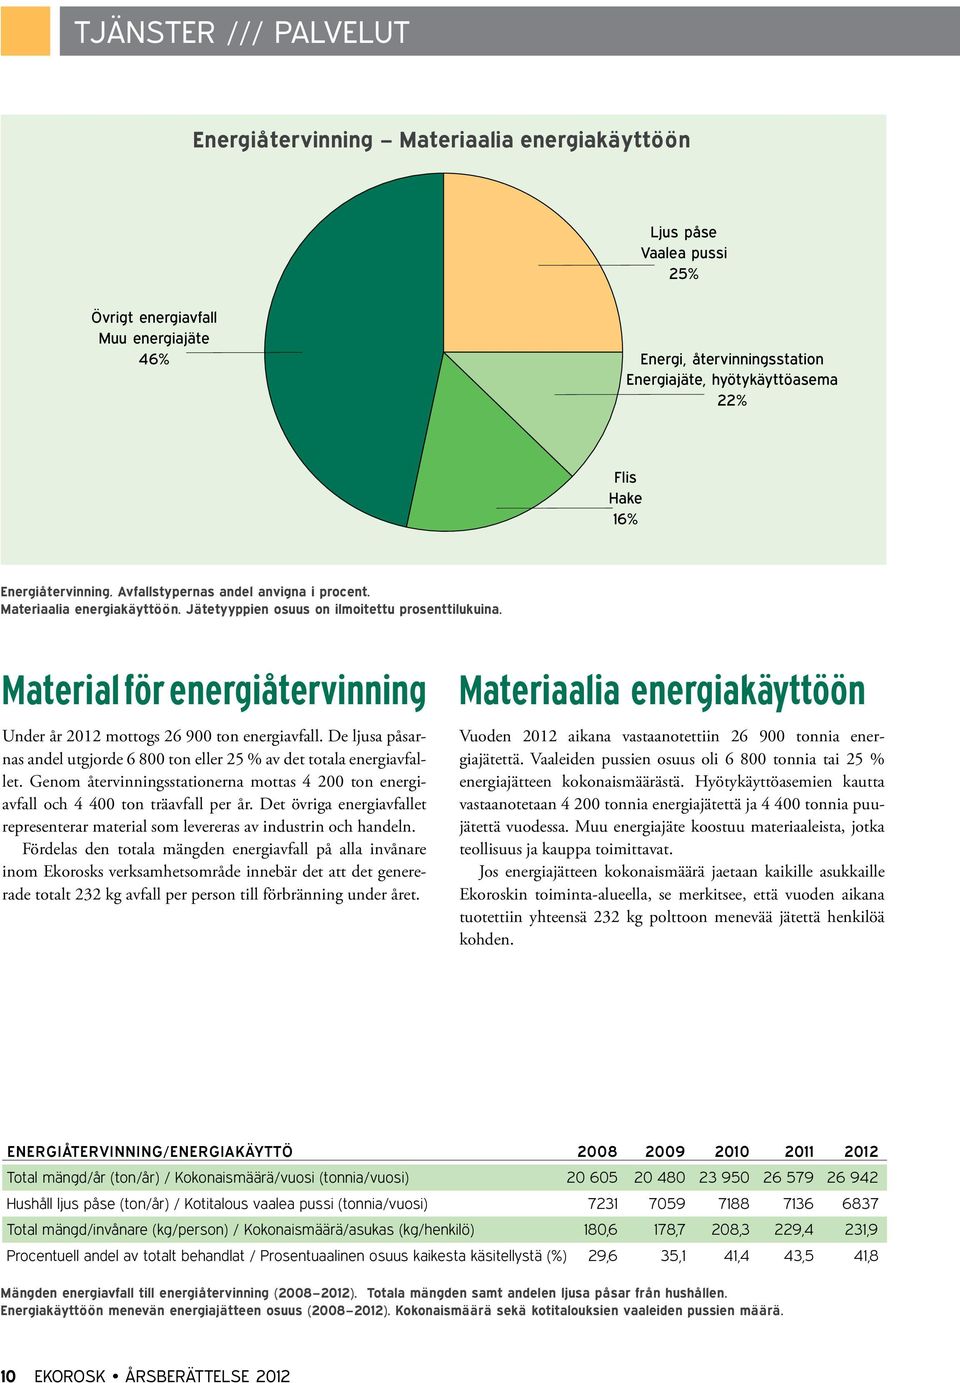 Material för energiåtervinning Under år 2012 mottogs 26 900 ton energiavfall. De ljusa påsarnas andel utgjorde 6 800 ton eller 25 % av det totala energiavfallet.